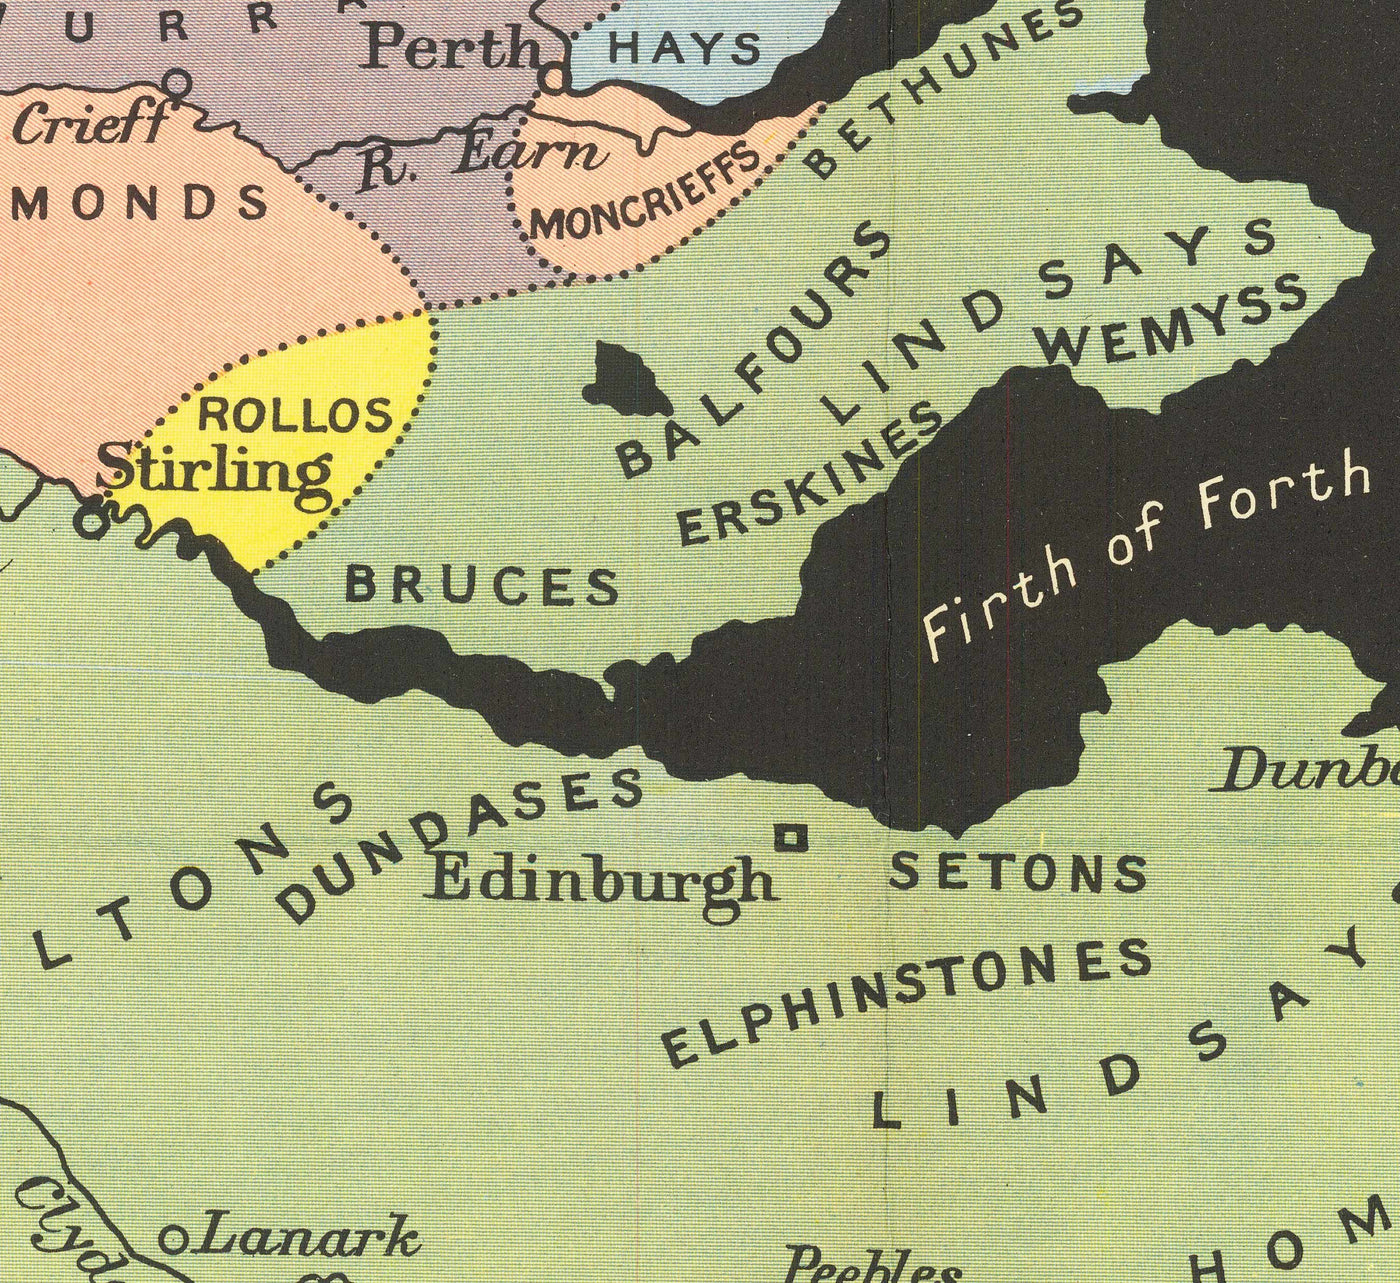 Viejo mapa de Escocia Clans y Tartanes - Tierras Highlands & Lowlands de Johnston